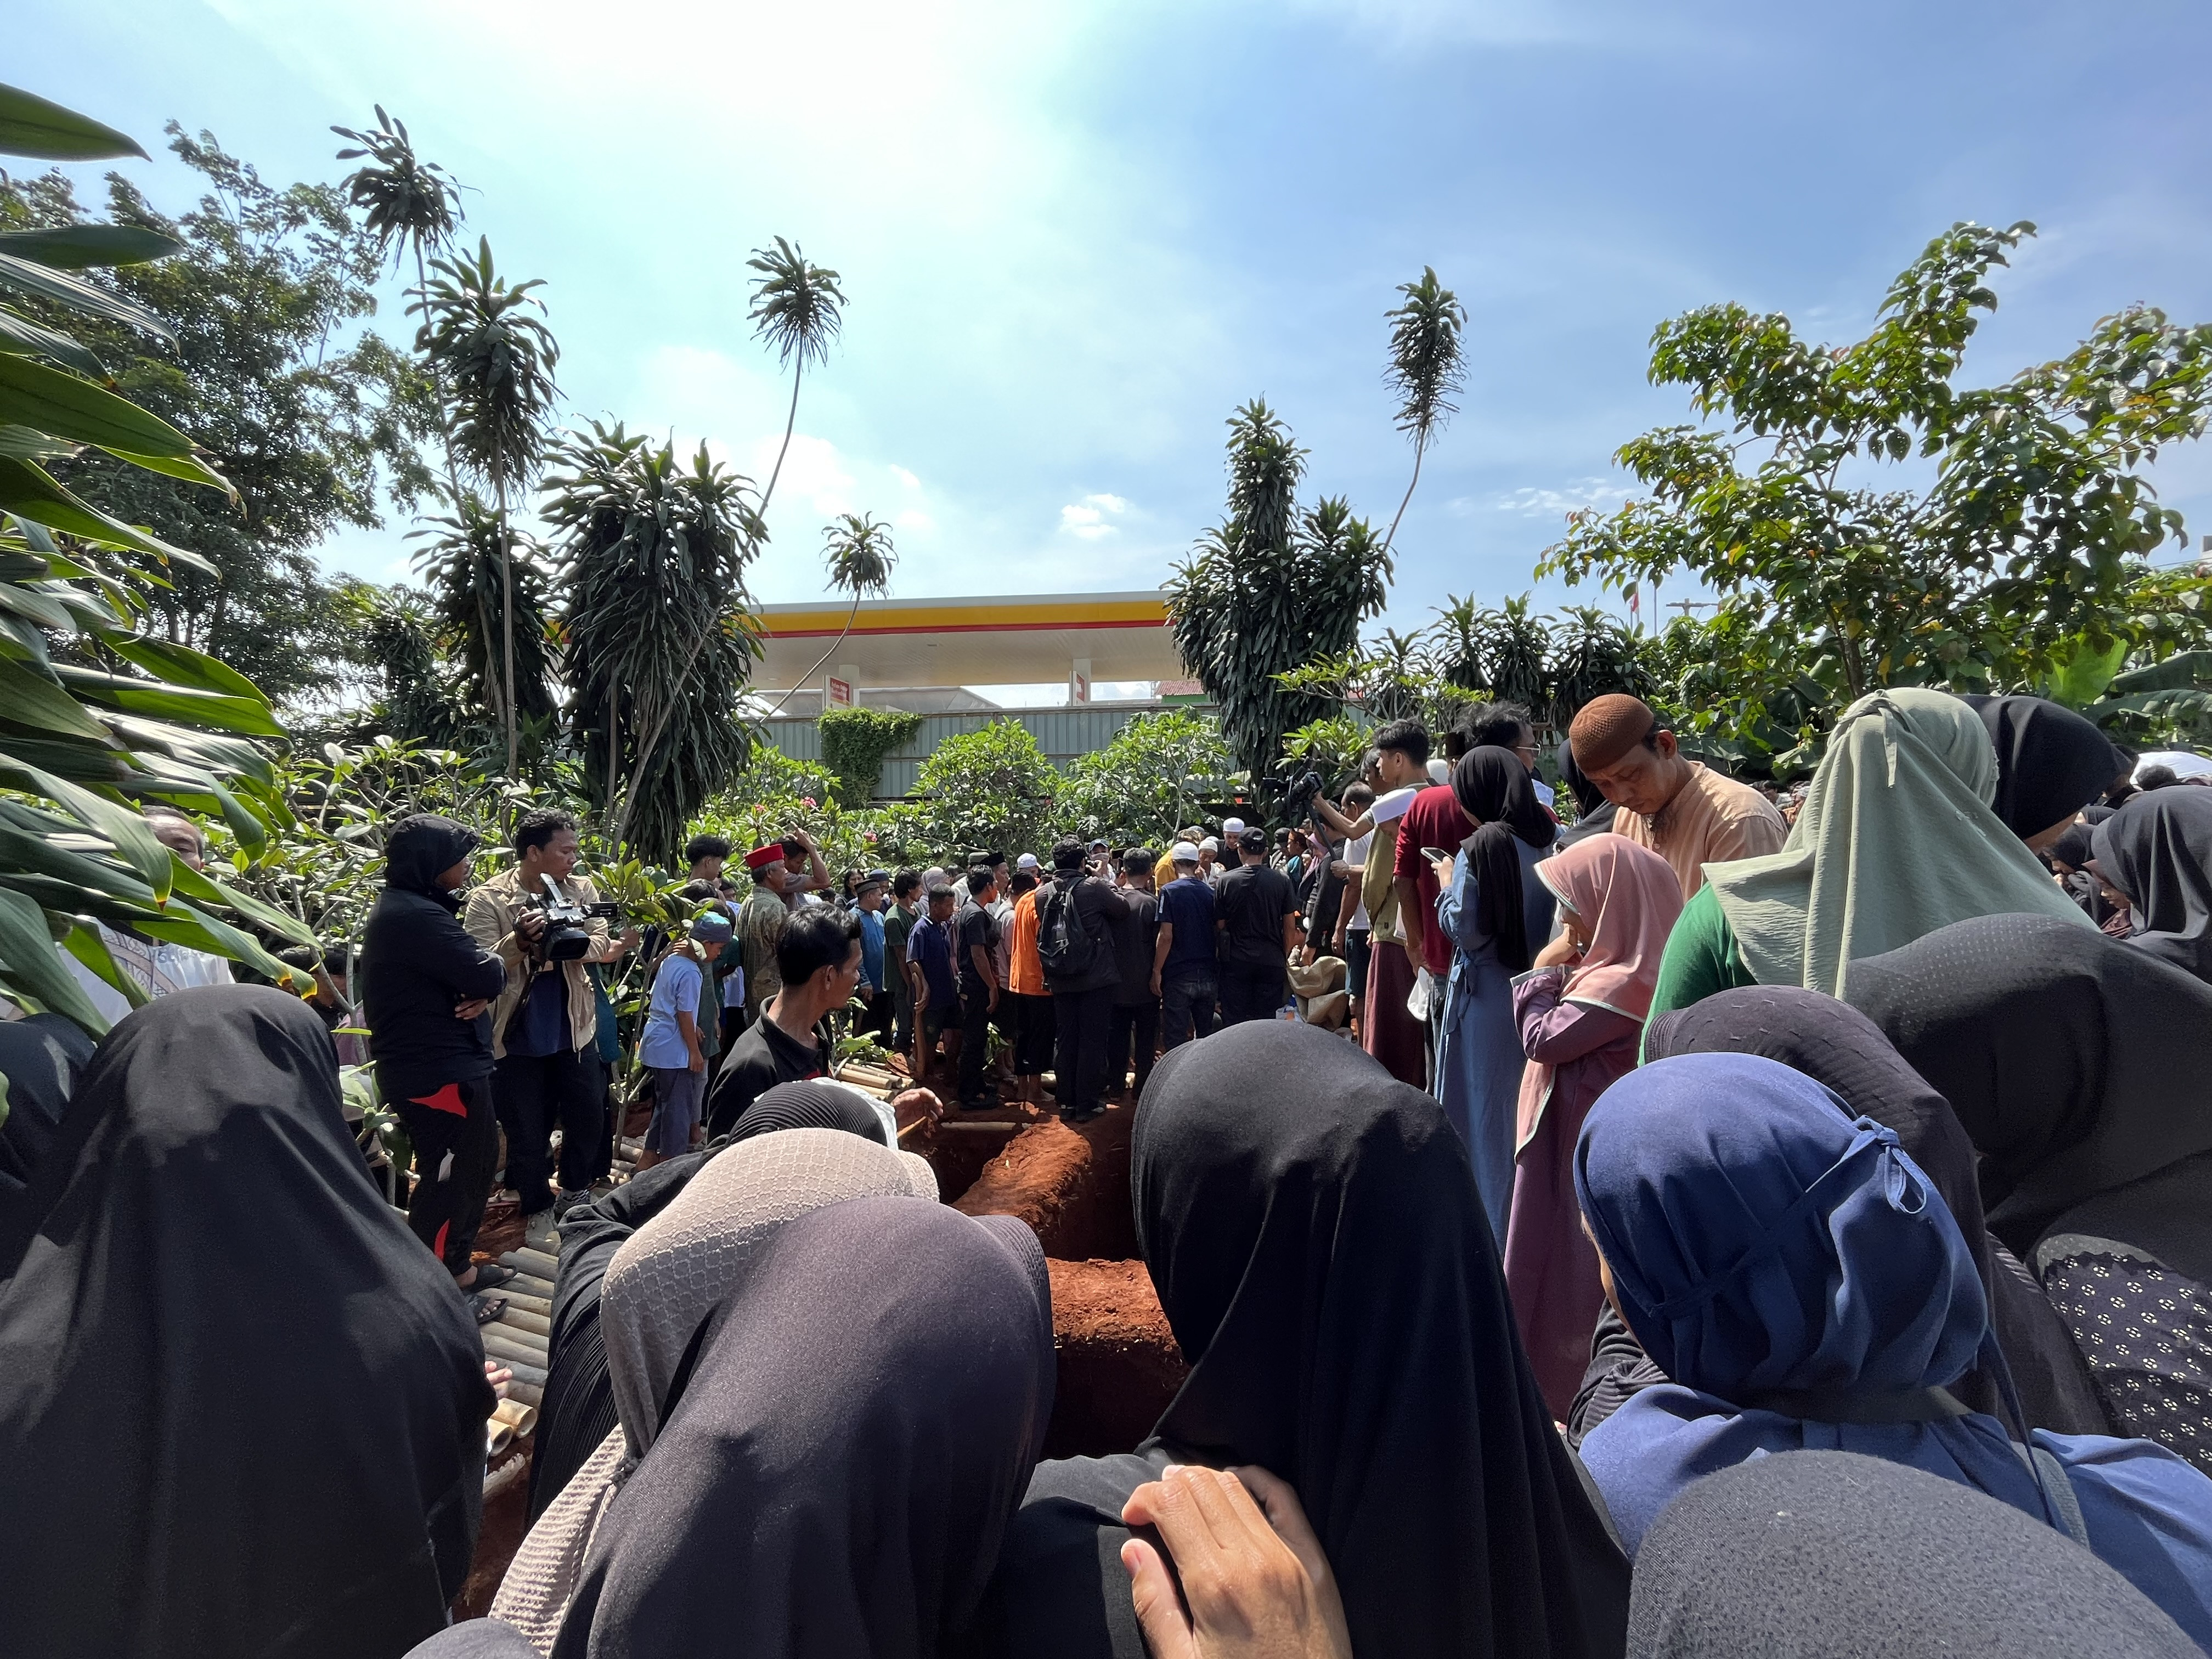 Ratusan Pelayat Iringi Pemakaman 6 Korban Bus SMK Lingga Kencana - JPNN.com Jabar